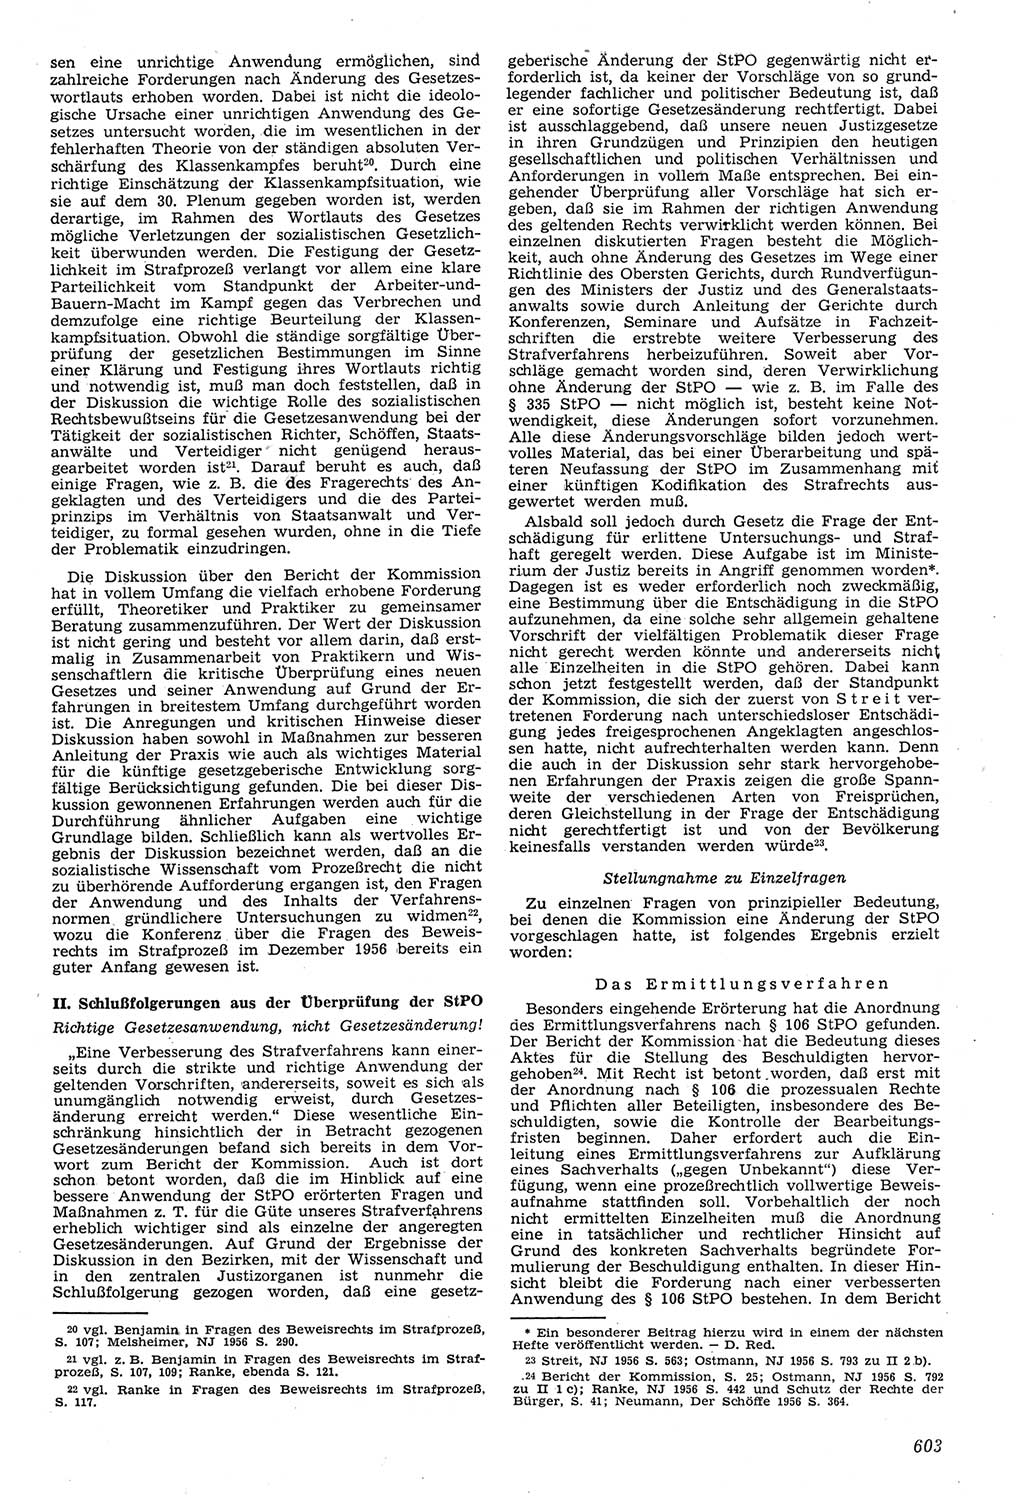 Neue Justiz (NJ), Zeitschrift für Recht und Rechtswissenschaft [Deutsche Demokratische Republik (DDR)], 11. Jahrgang 1957, Seite 603 (NJ DDR 1957, S. 603)